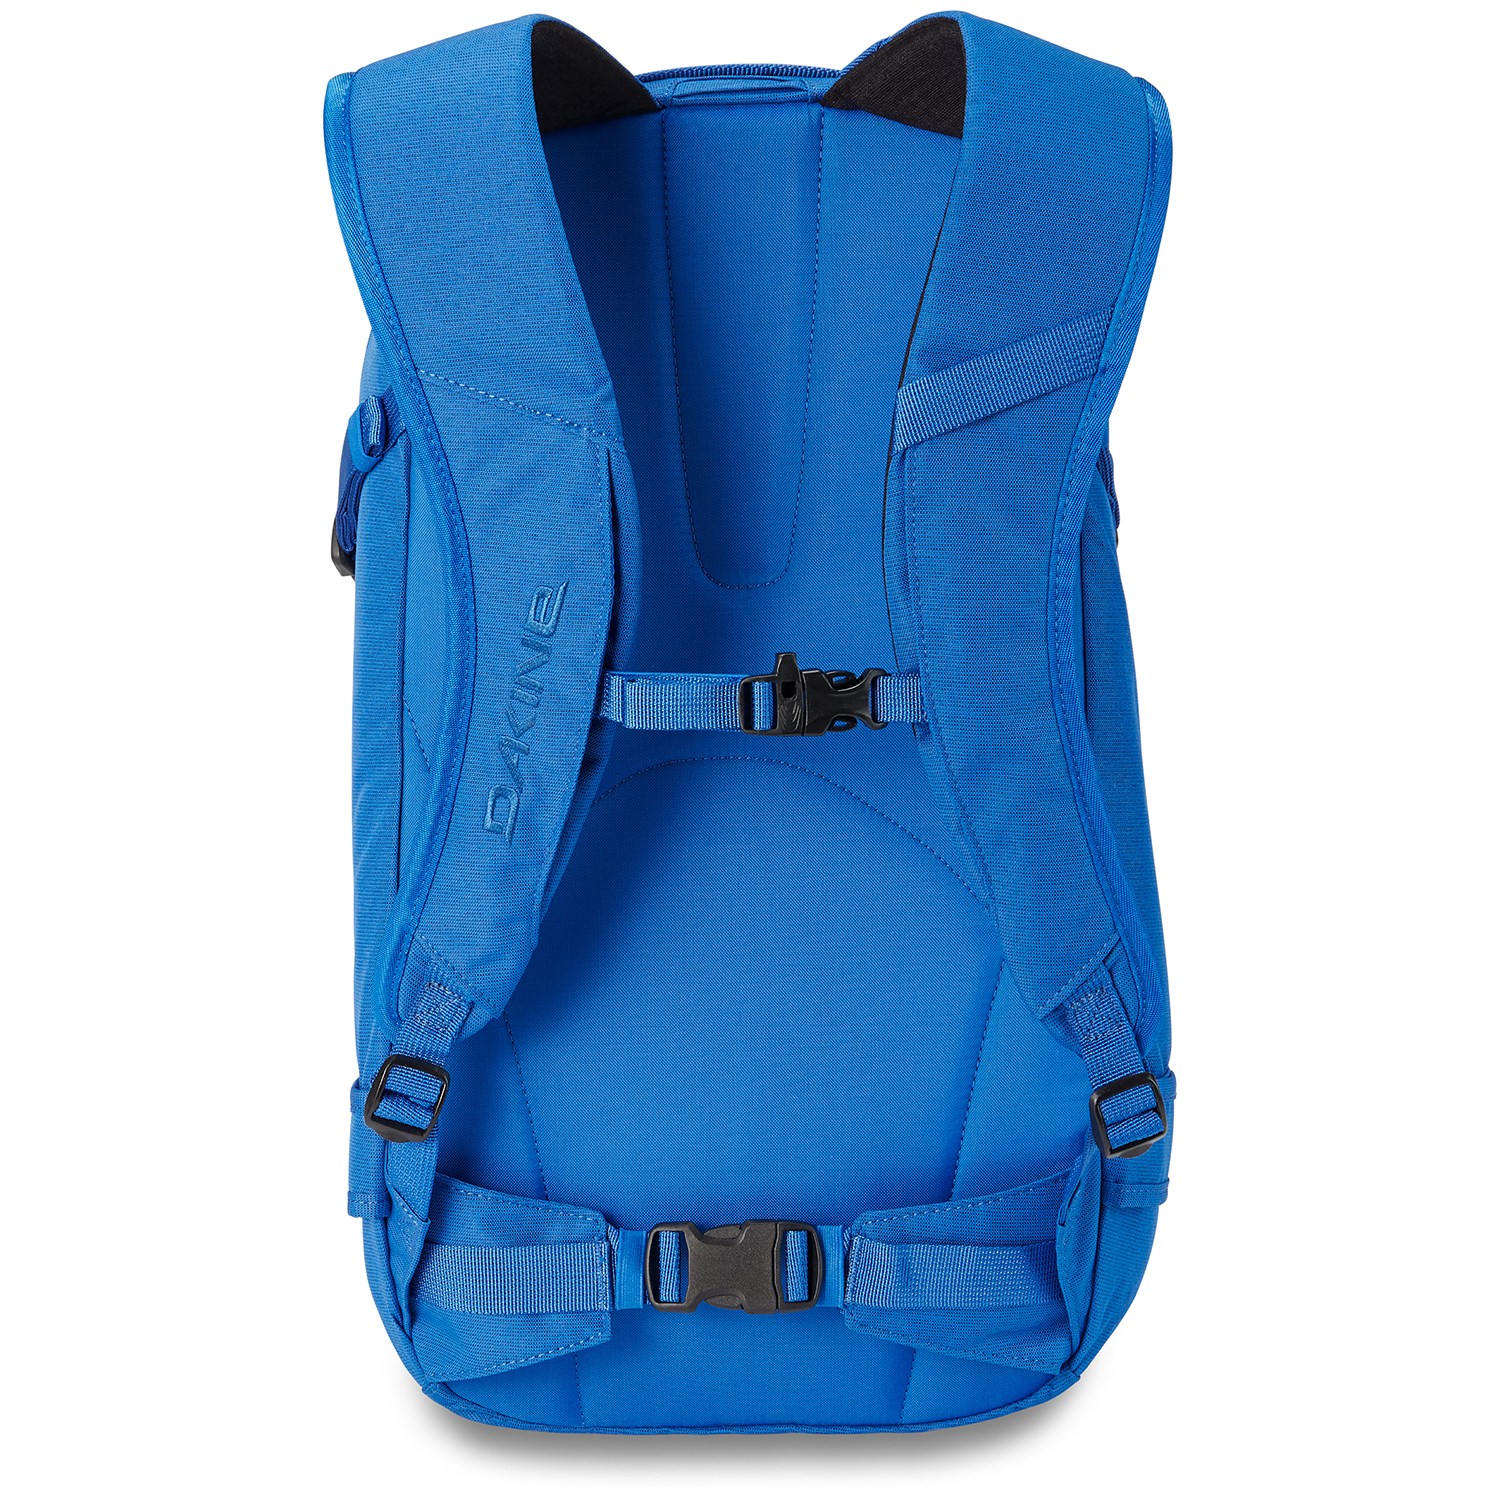 Junior Aanpassing Nauwkeurig Dakine Heli Pro 20L Backpack | evo